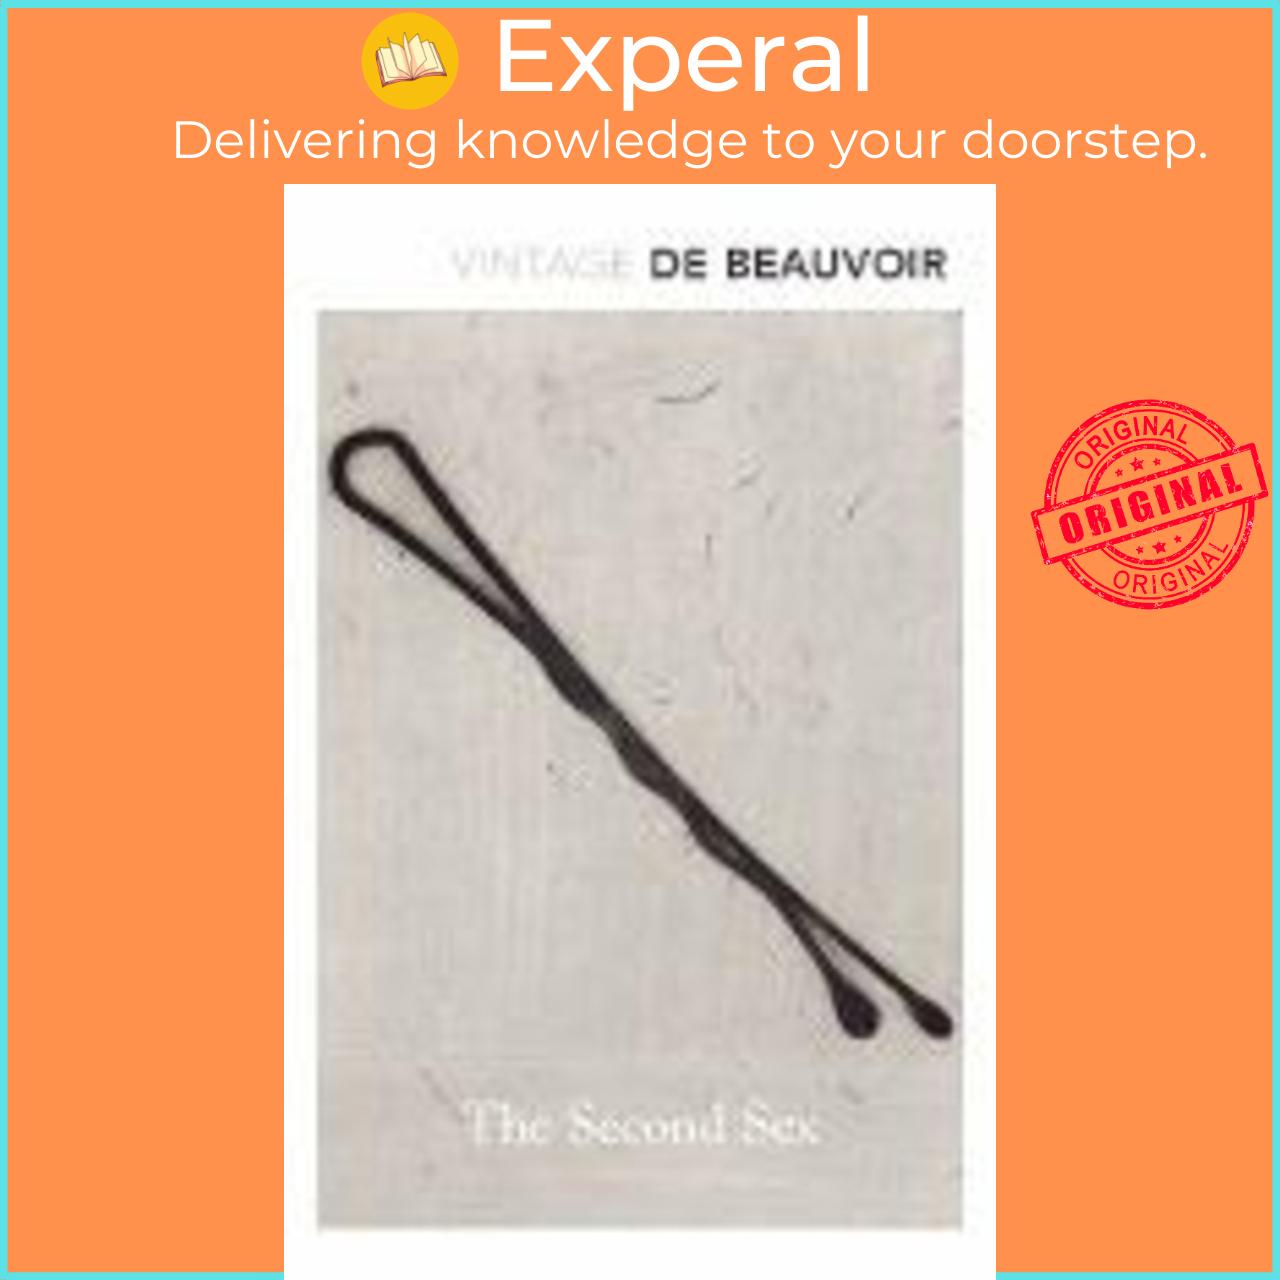 Sách - The Second Sex by Simone de Beauvoir (UK edition, paperback)